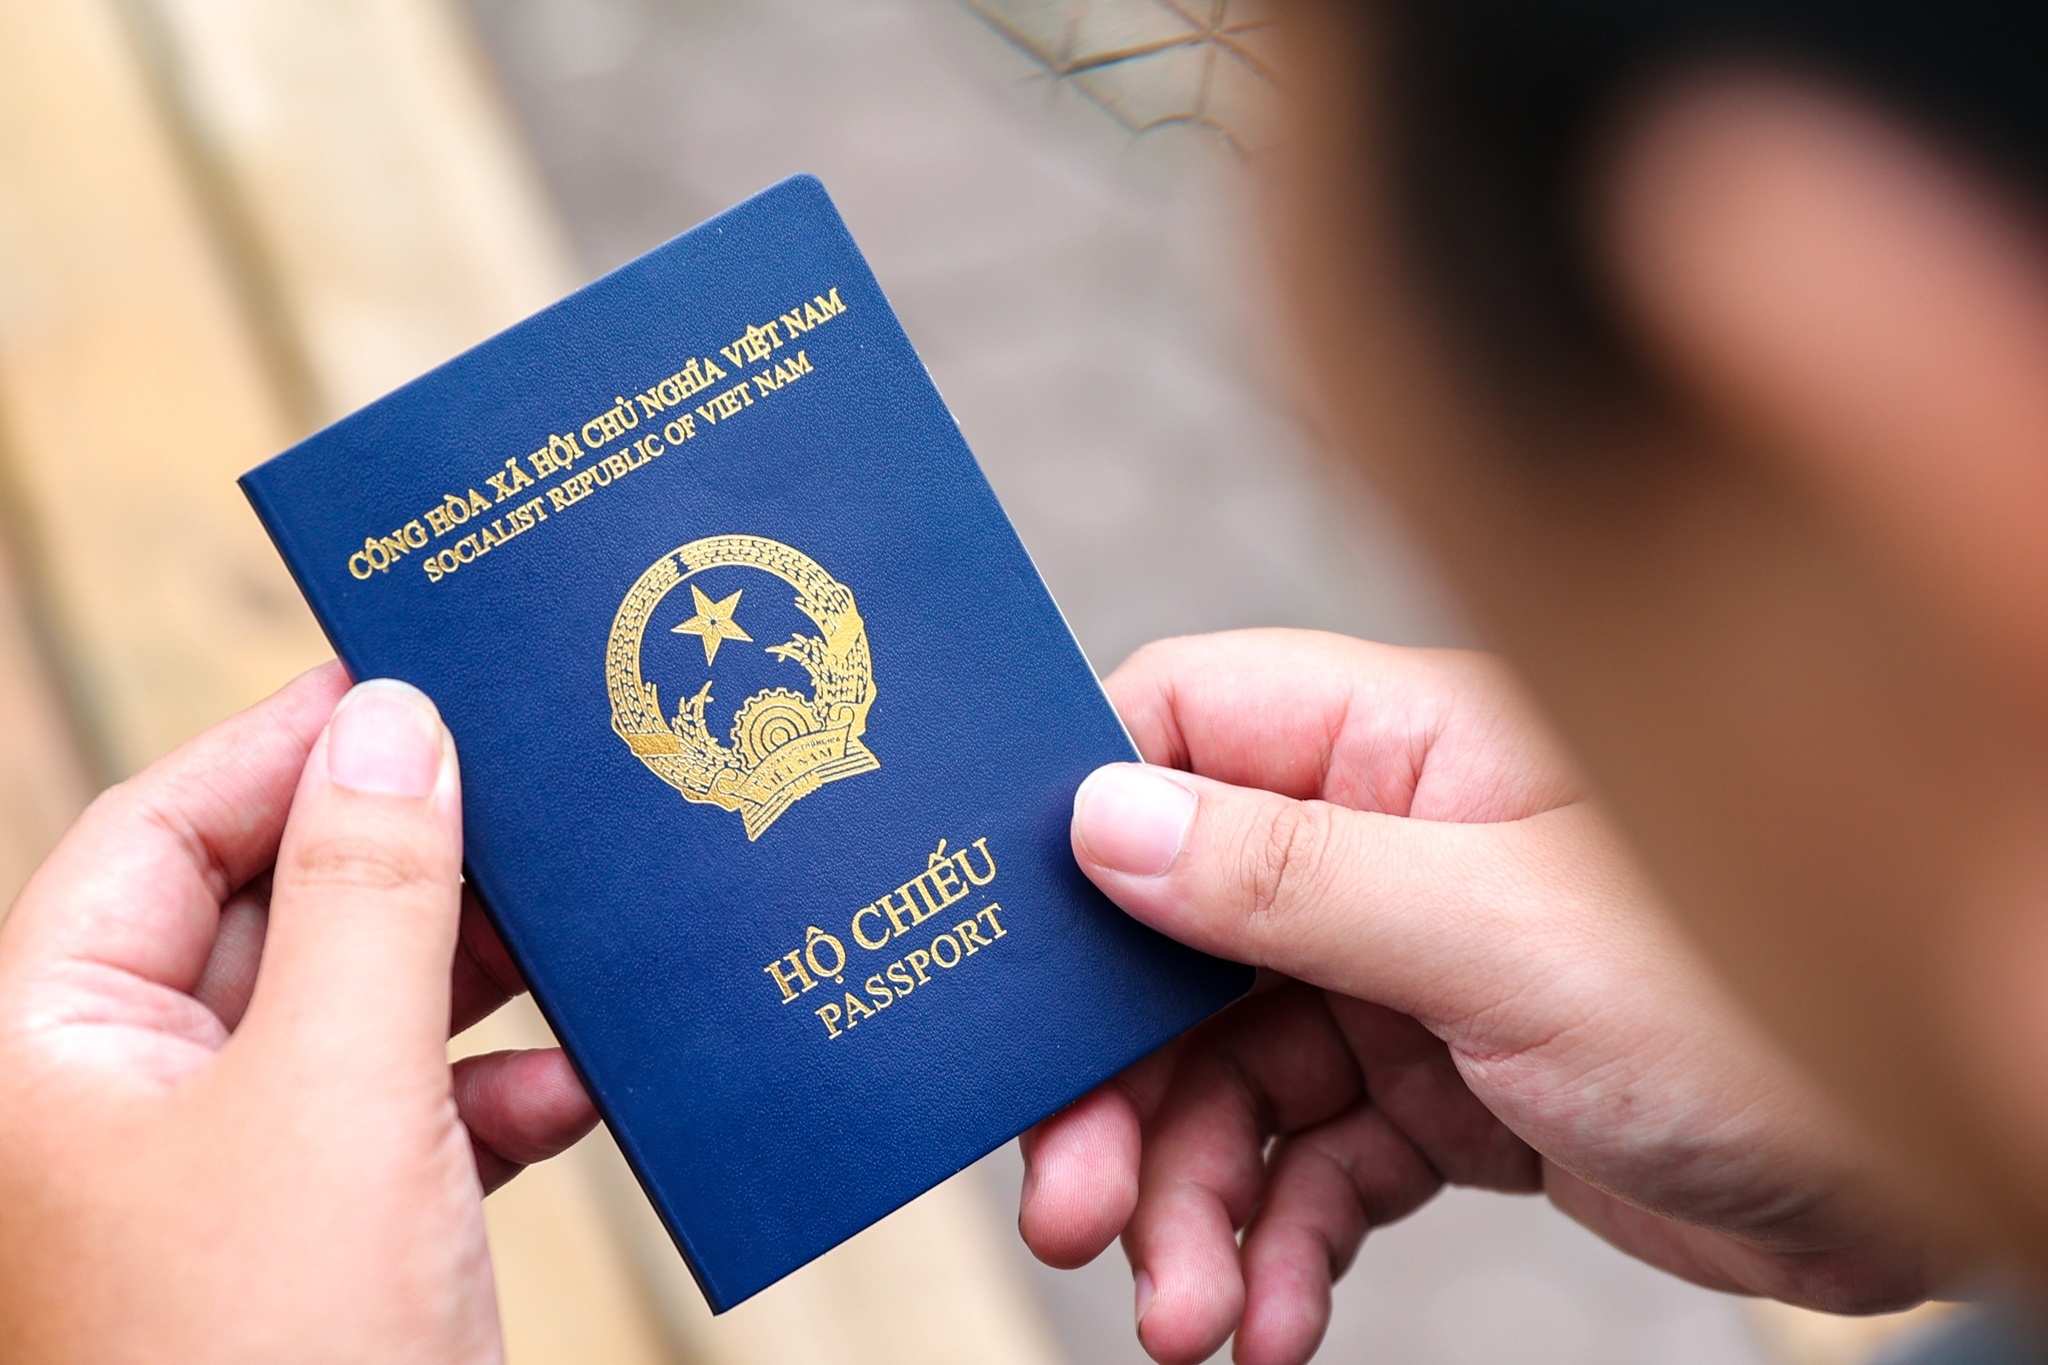 Mất hộ chiếu: Hình ảnh liên quan đến mất hộ chiếu sẽ giúp bạn nhận biết các biện pháp phòng ngừa và giảm thiểu rủi ro. Bạn sẽ được trang bị kiến thức và kỹ năng xử lý khi mất hộ chiếu, giúp tiếp cận quy trình cấp lại hộ chiếu nhanh chóng.